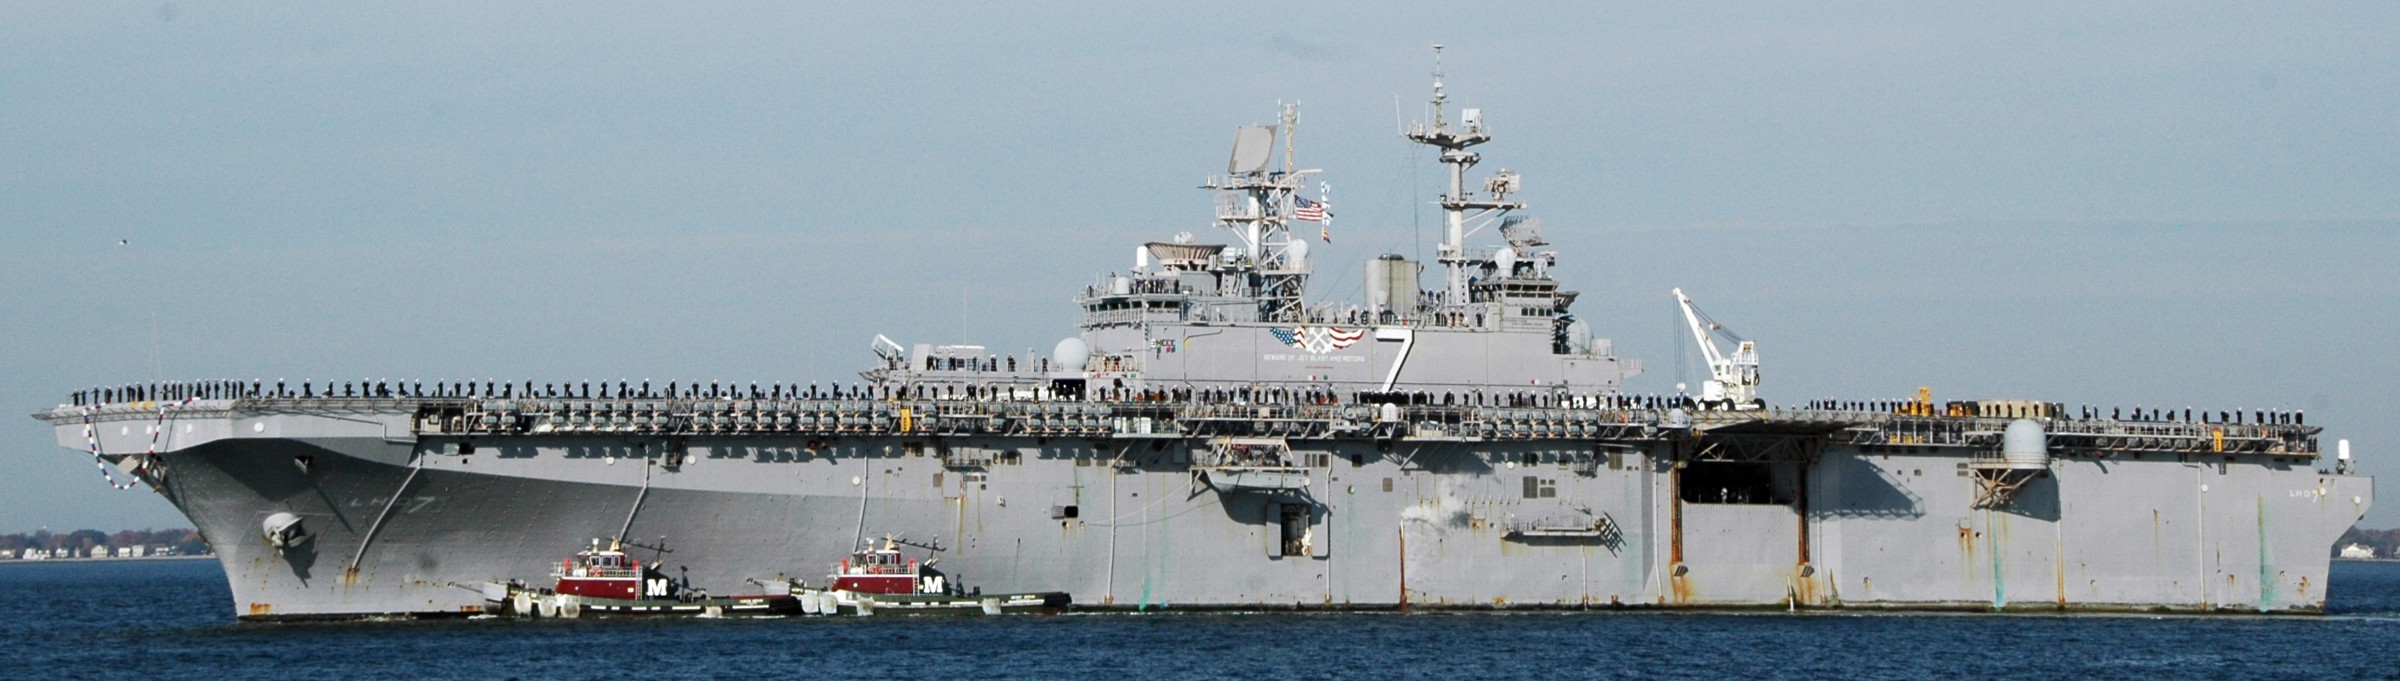 lhd-7 uss iwo jima wasp class amphibious assault ship dock landing helicopter us navy norfolk virginia 97